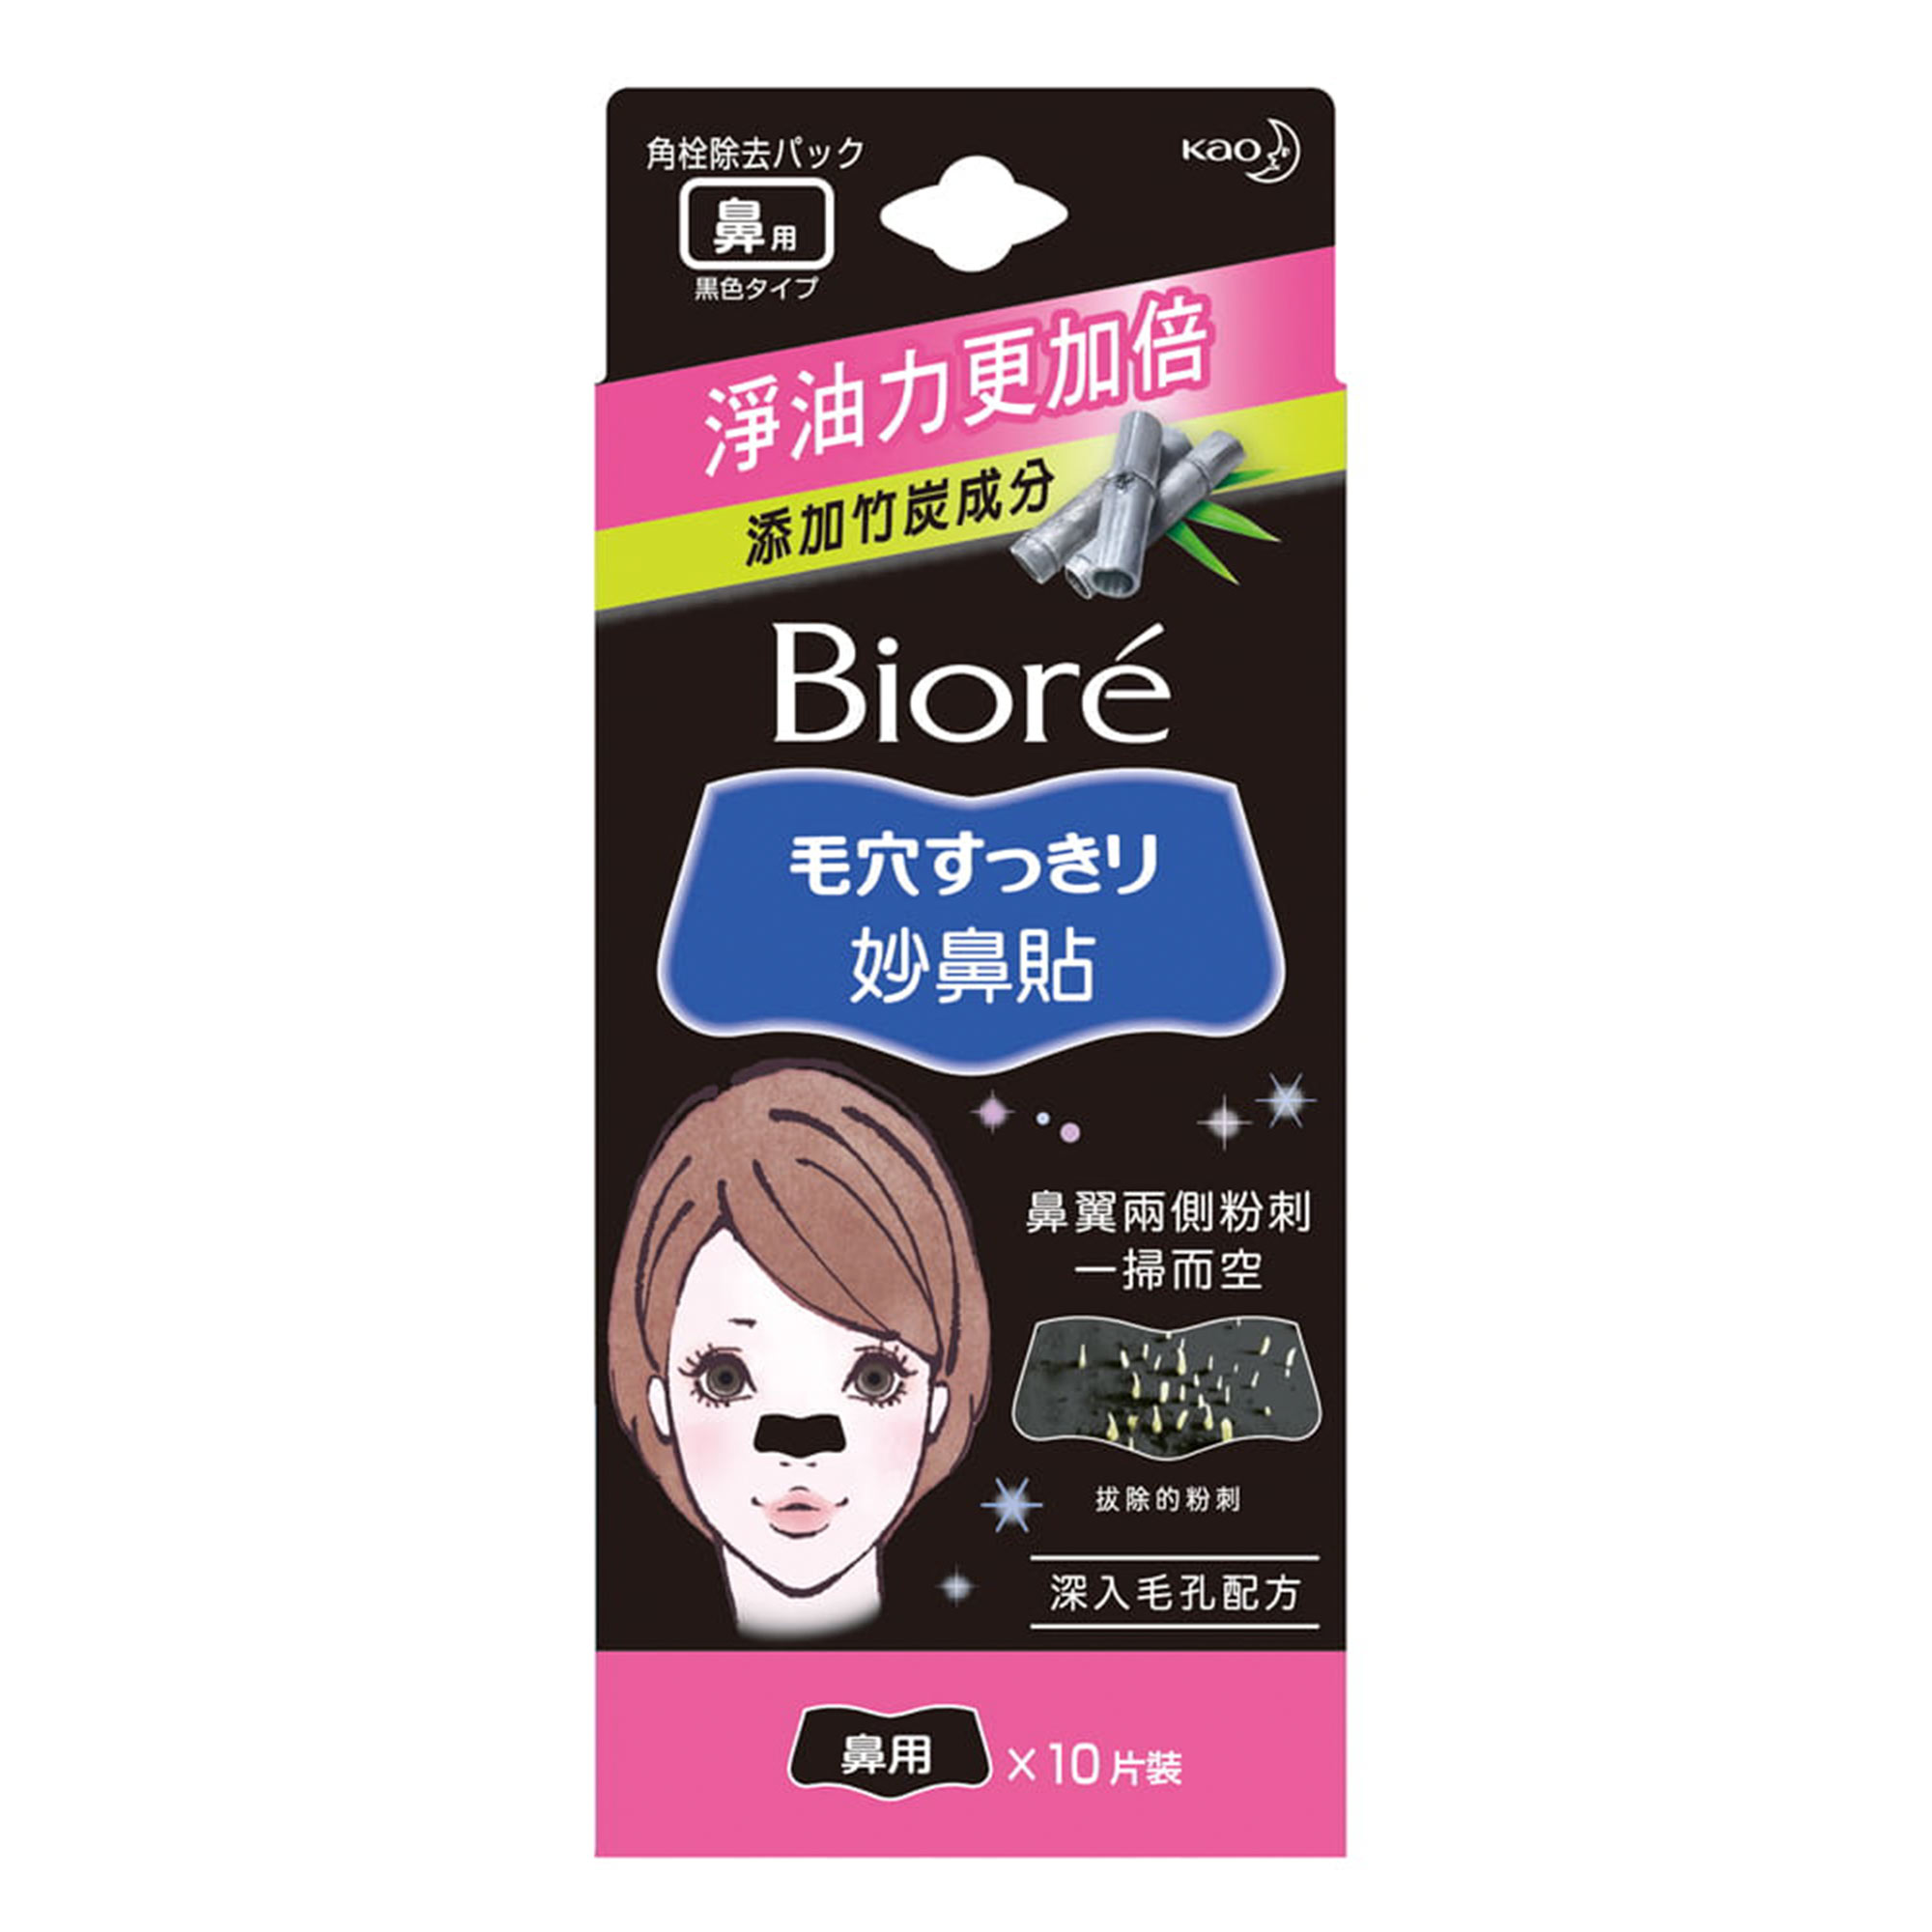 Очищающие полоски для носа Biore  с бамбуковым углем 10 шт полоски для квиллинга 180 полосок плотность 120 гр